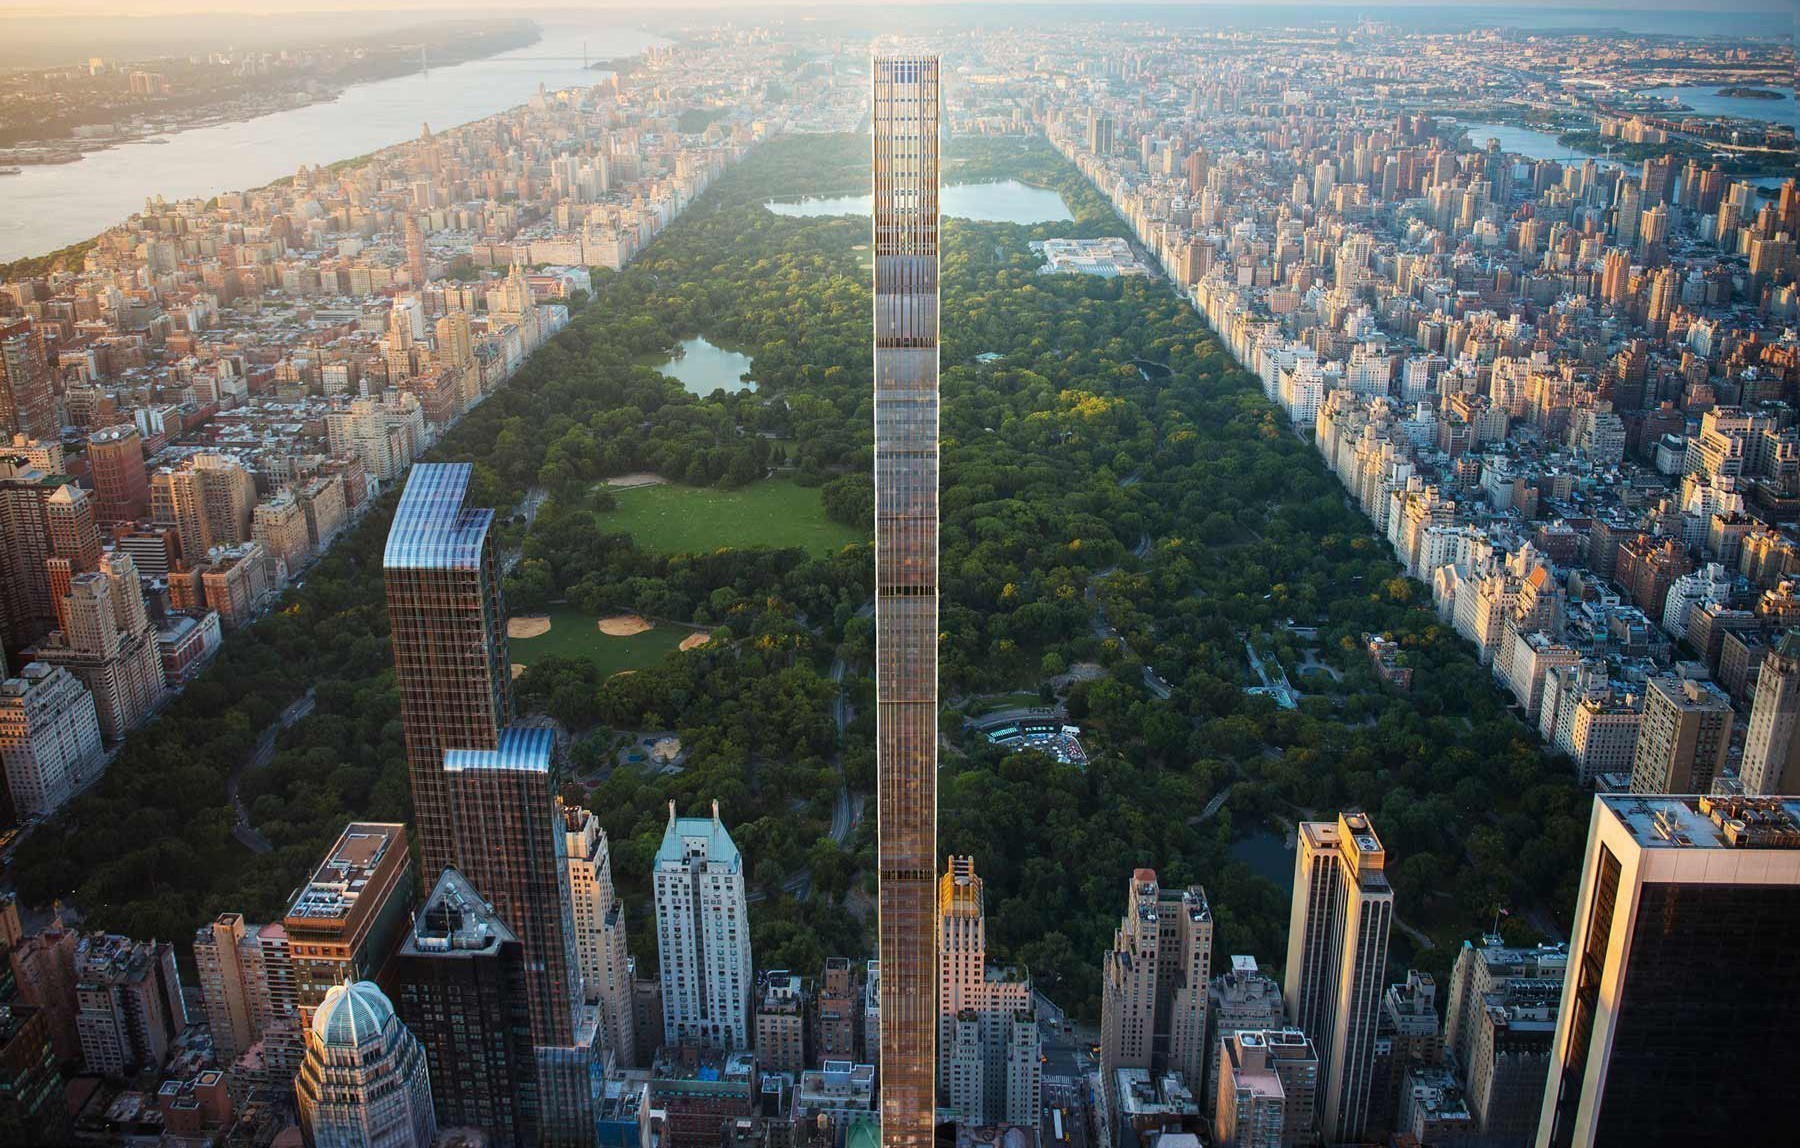 O λεπτότερος ουρανοξύστης στον κόσμο βλέπει το Central Park της Νέας Υόρκης από τα 435 μέτρα